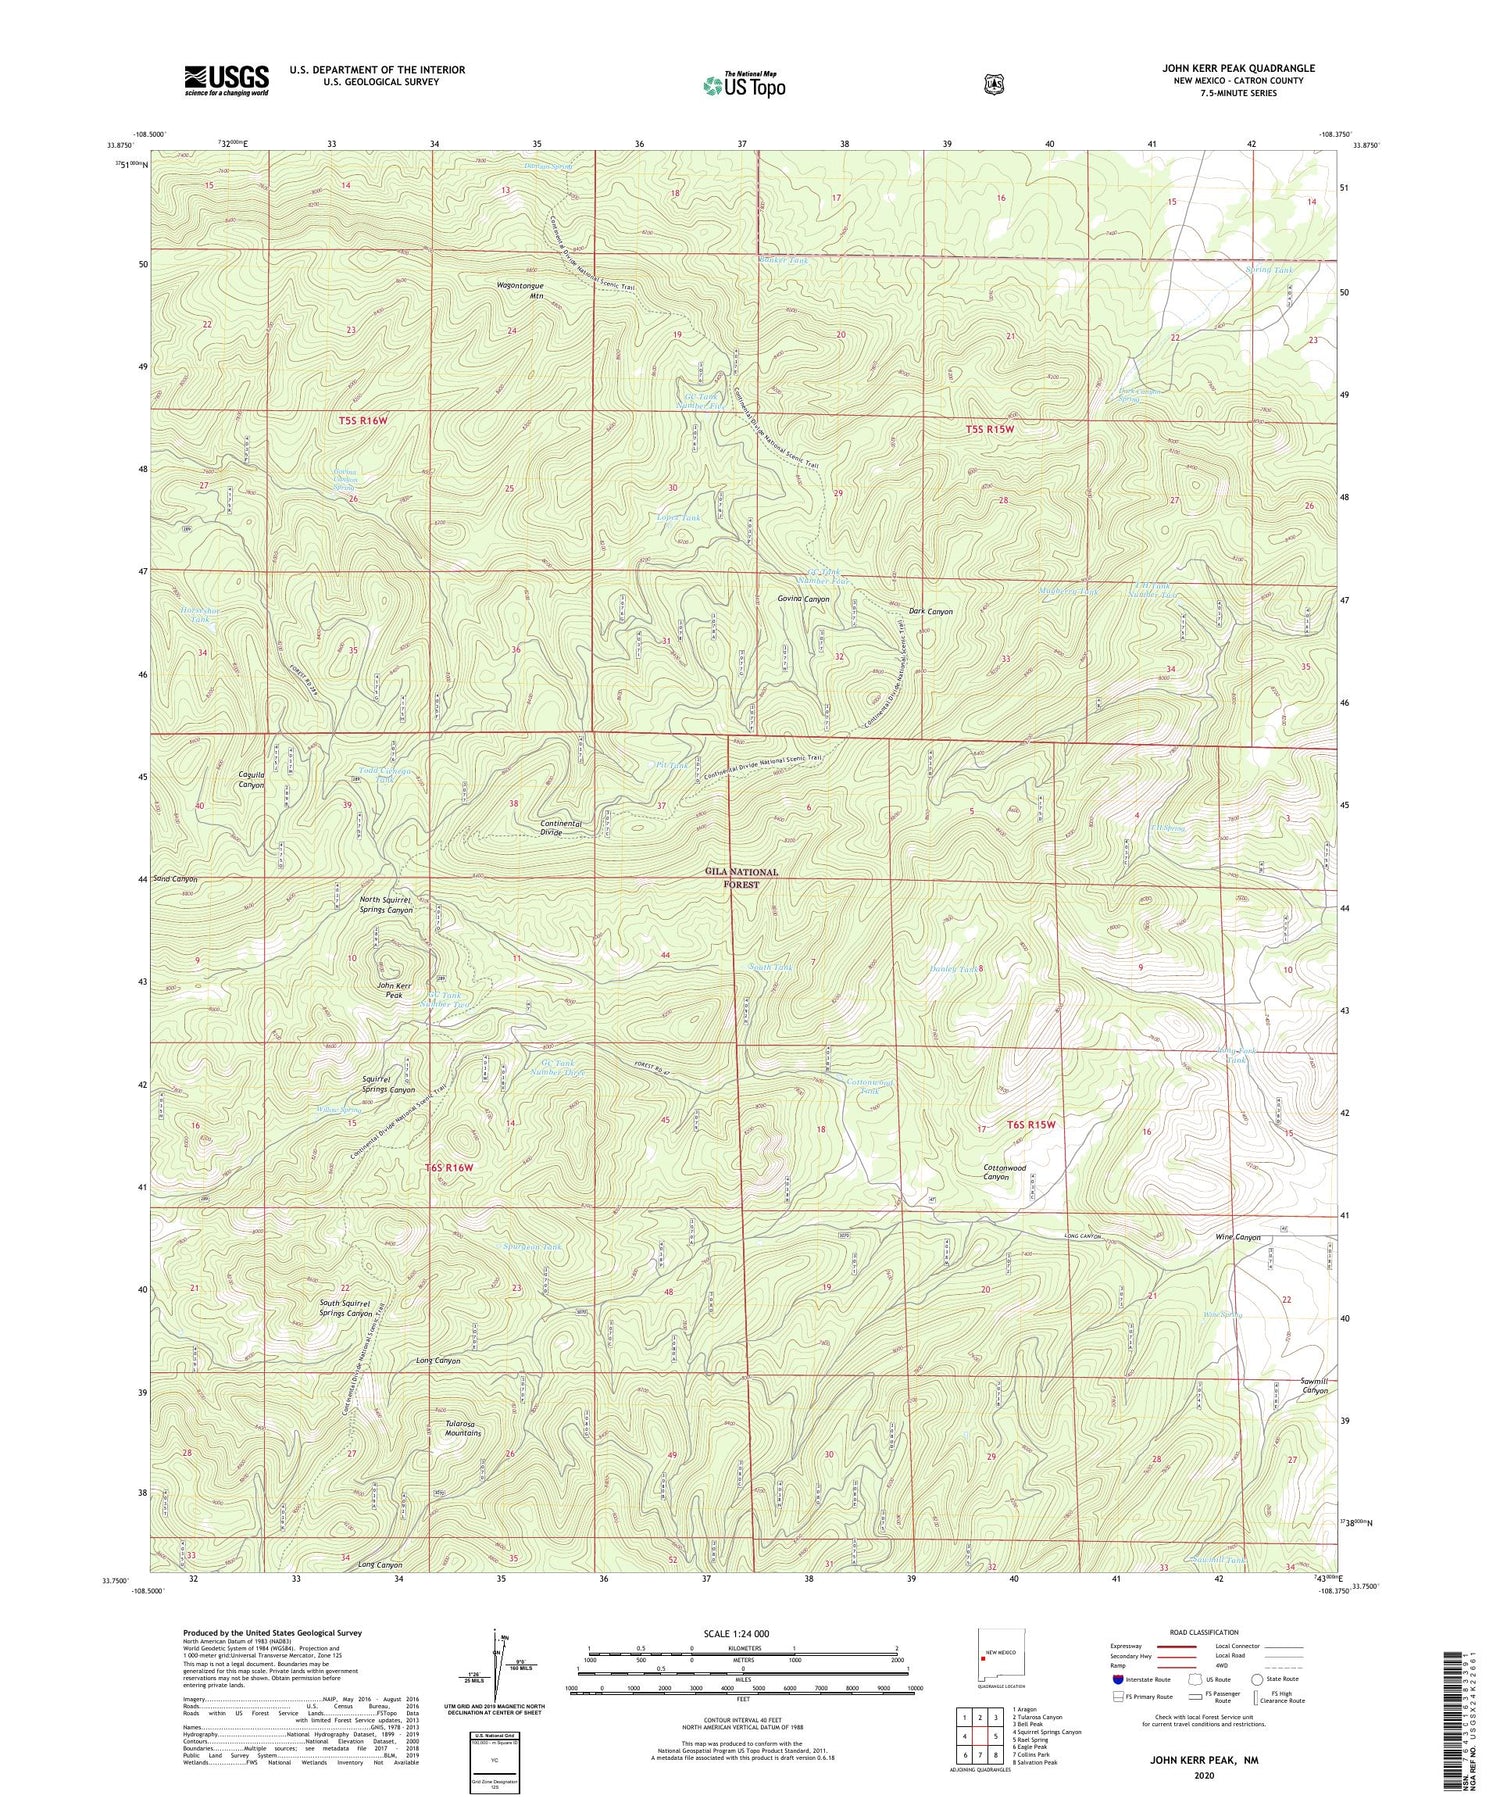 John Kerr Peak New Mexico US Topo Map Image